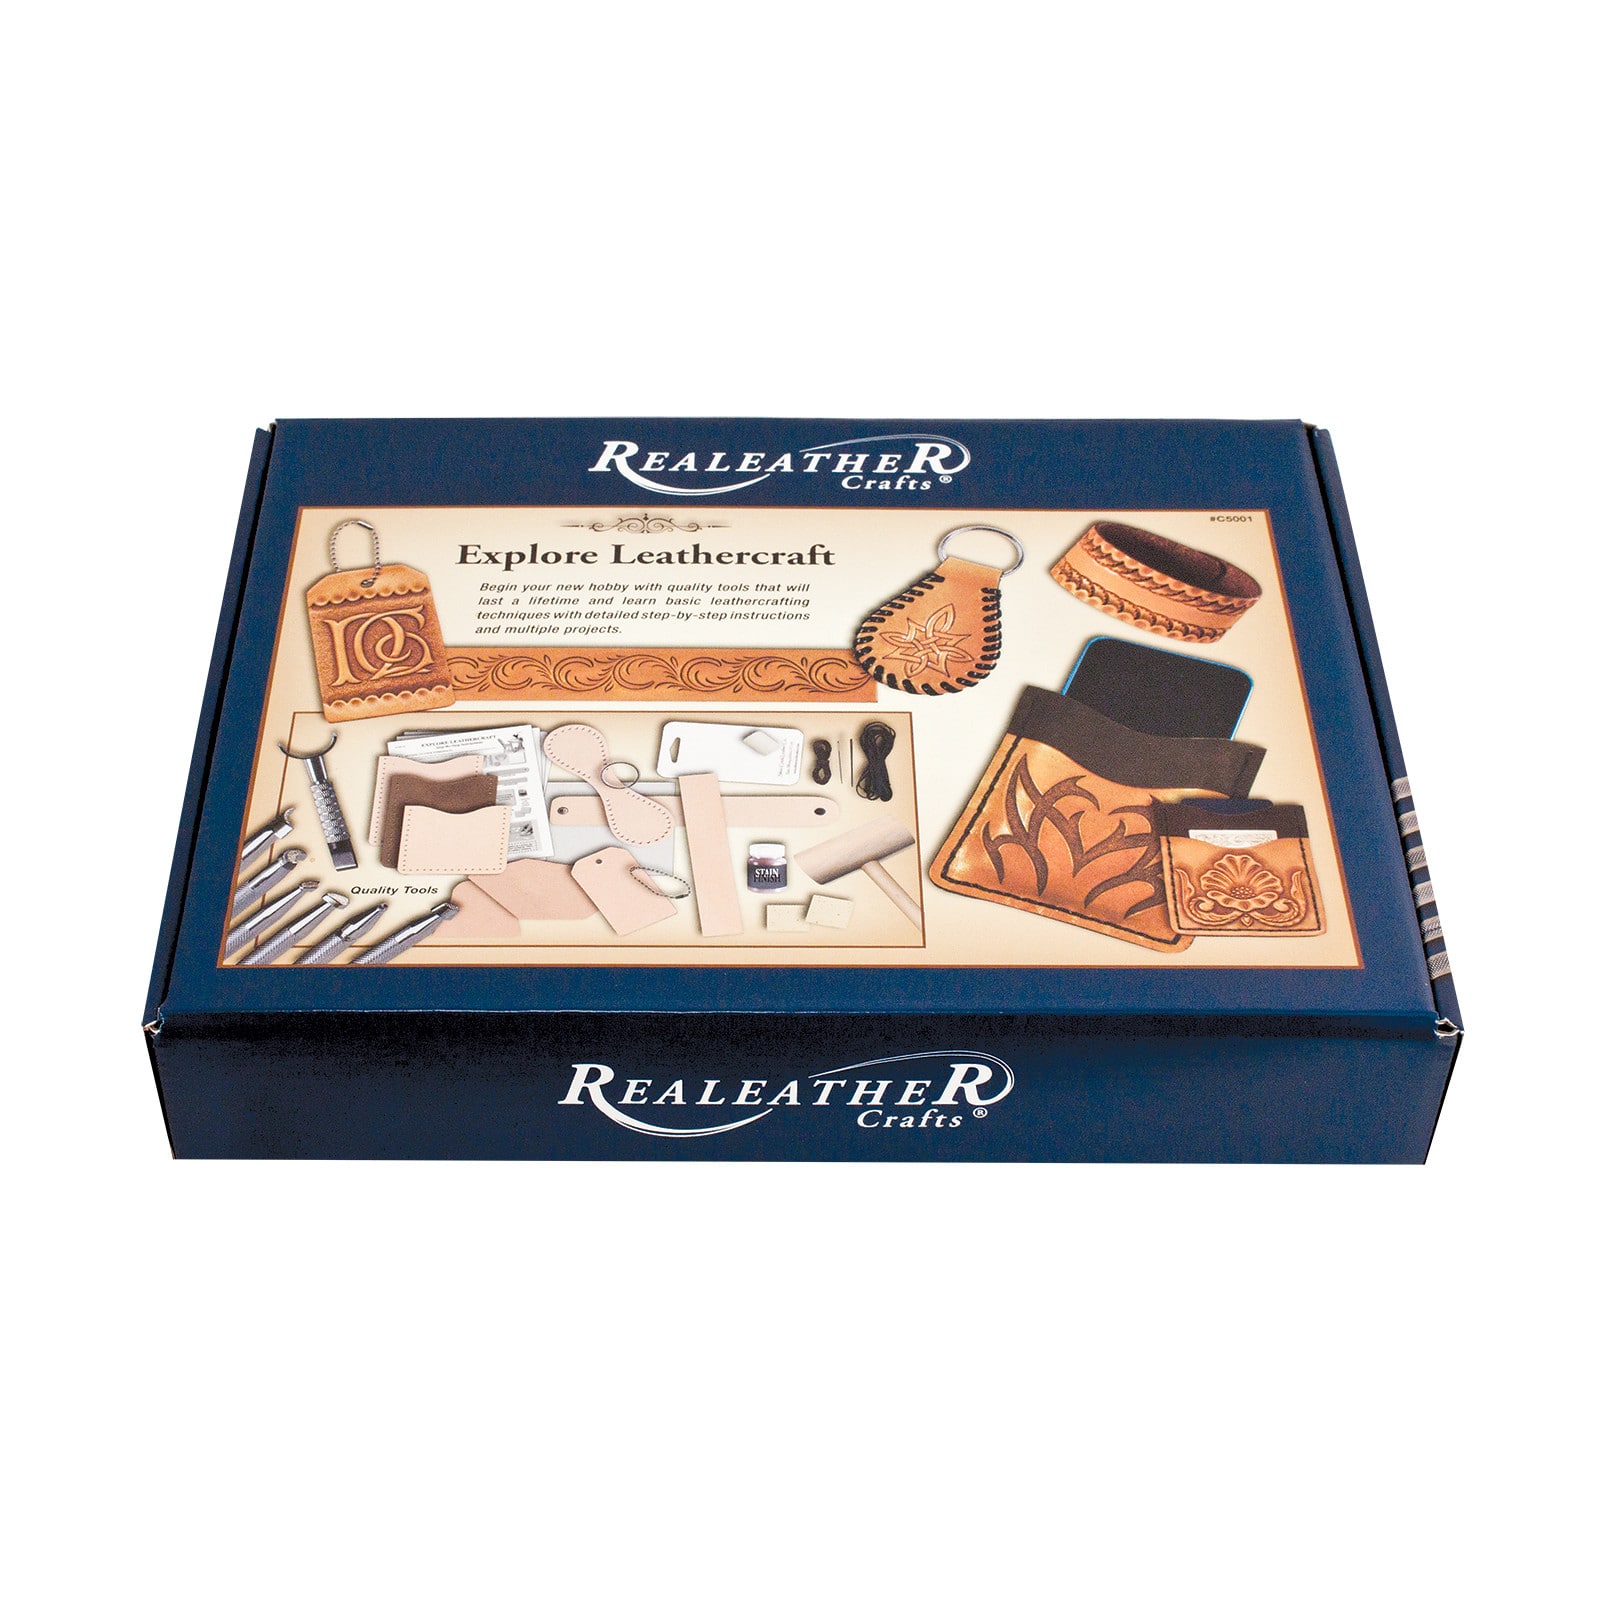 Realeather Leather Kit - Explore Leathercraft